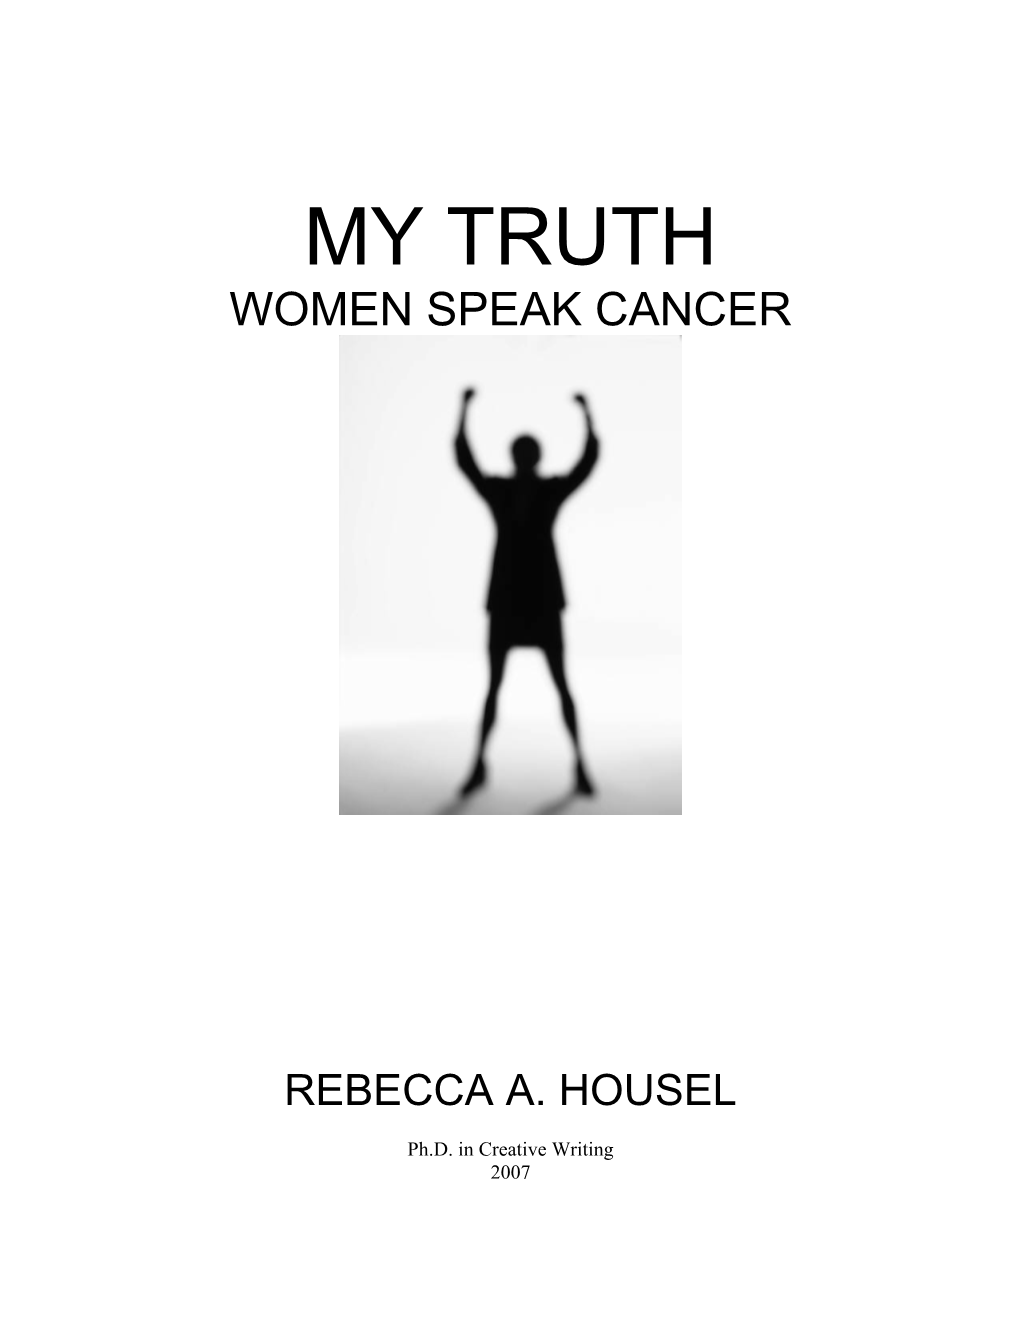 My Truth: Women Speak Cancer